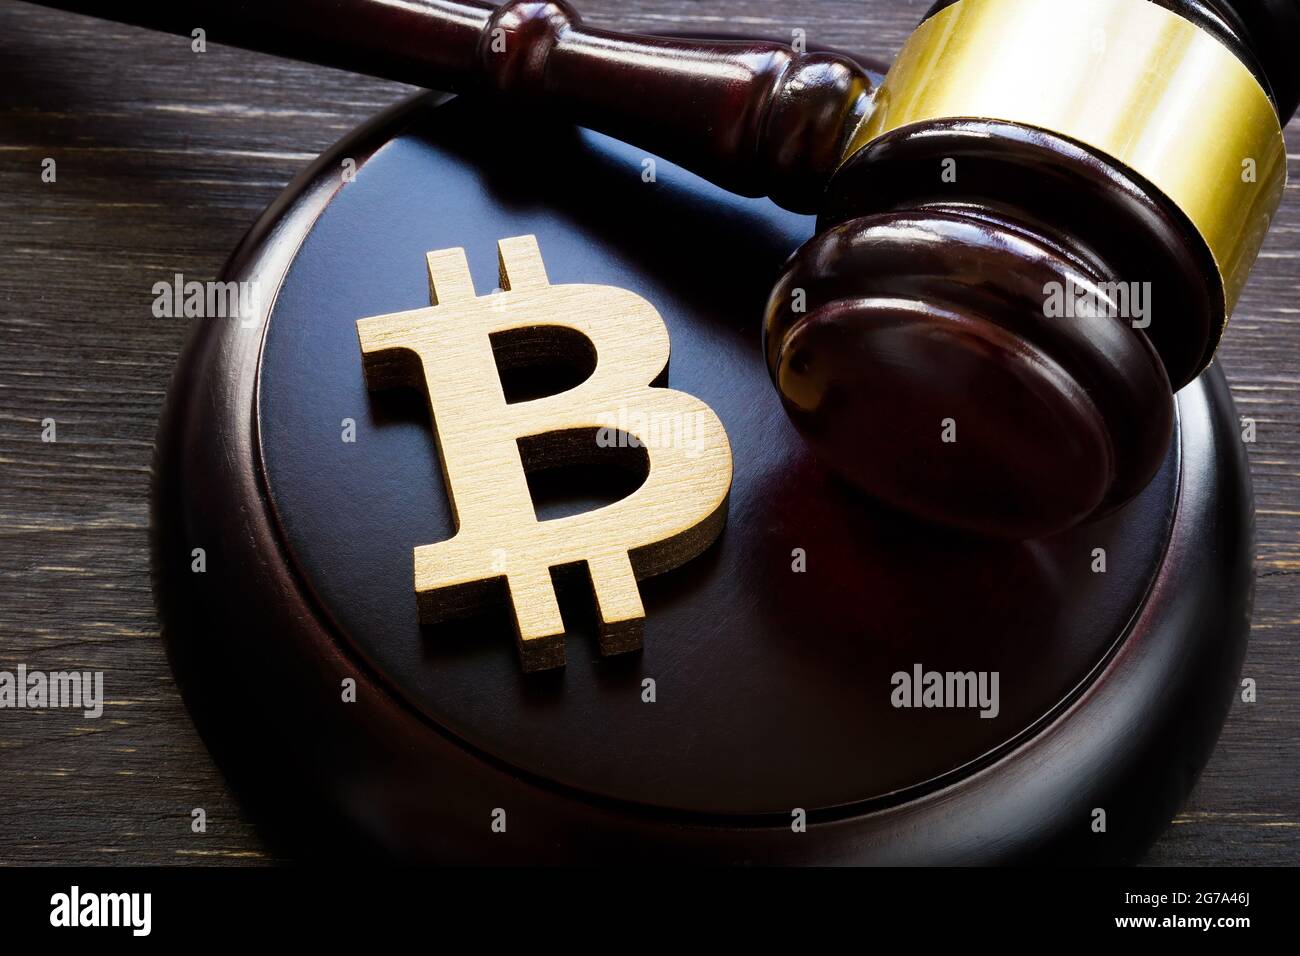 Le symbole Bitcoin et le gavel pour réglementer le marché des crypto-monnaies. Banque D'Images